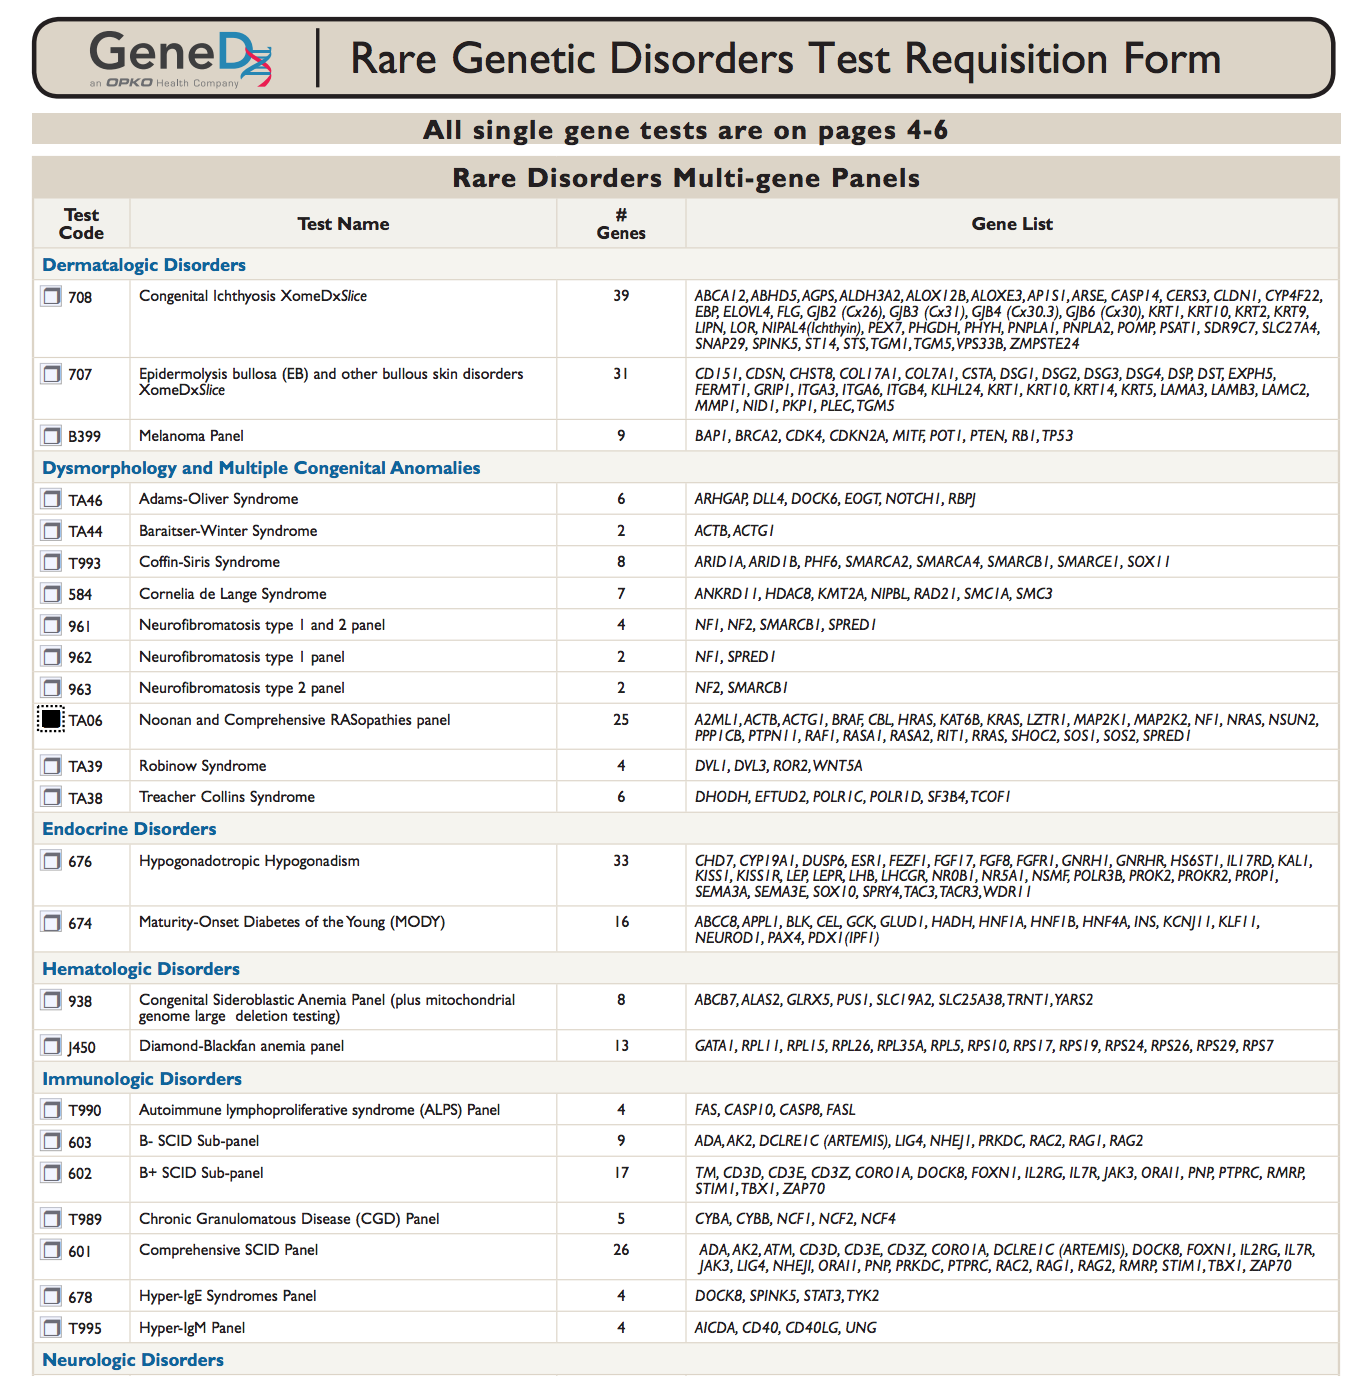 Таблица со списками, содержащими тесты, их коды, названия, количество генов, в которых обнаружено тестируемое состояние, и список этих генов